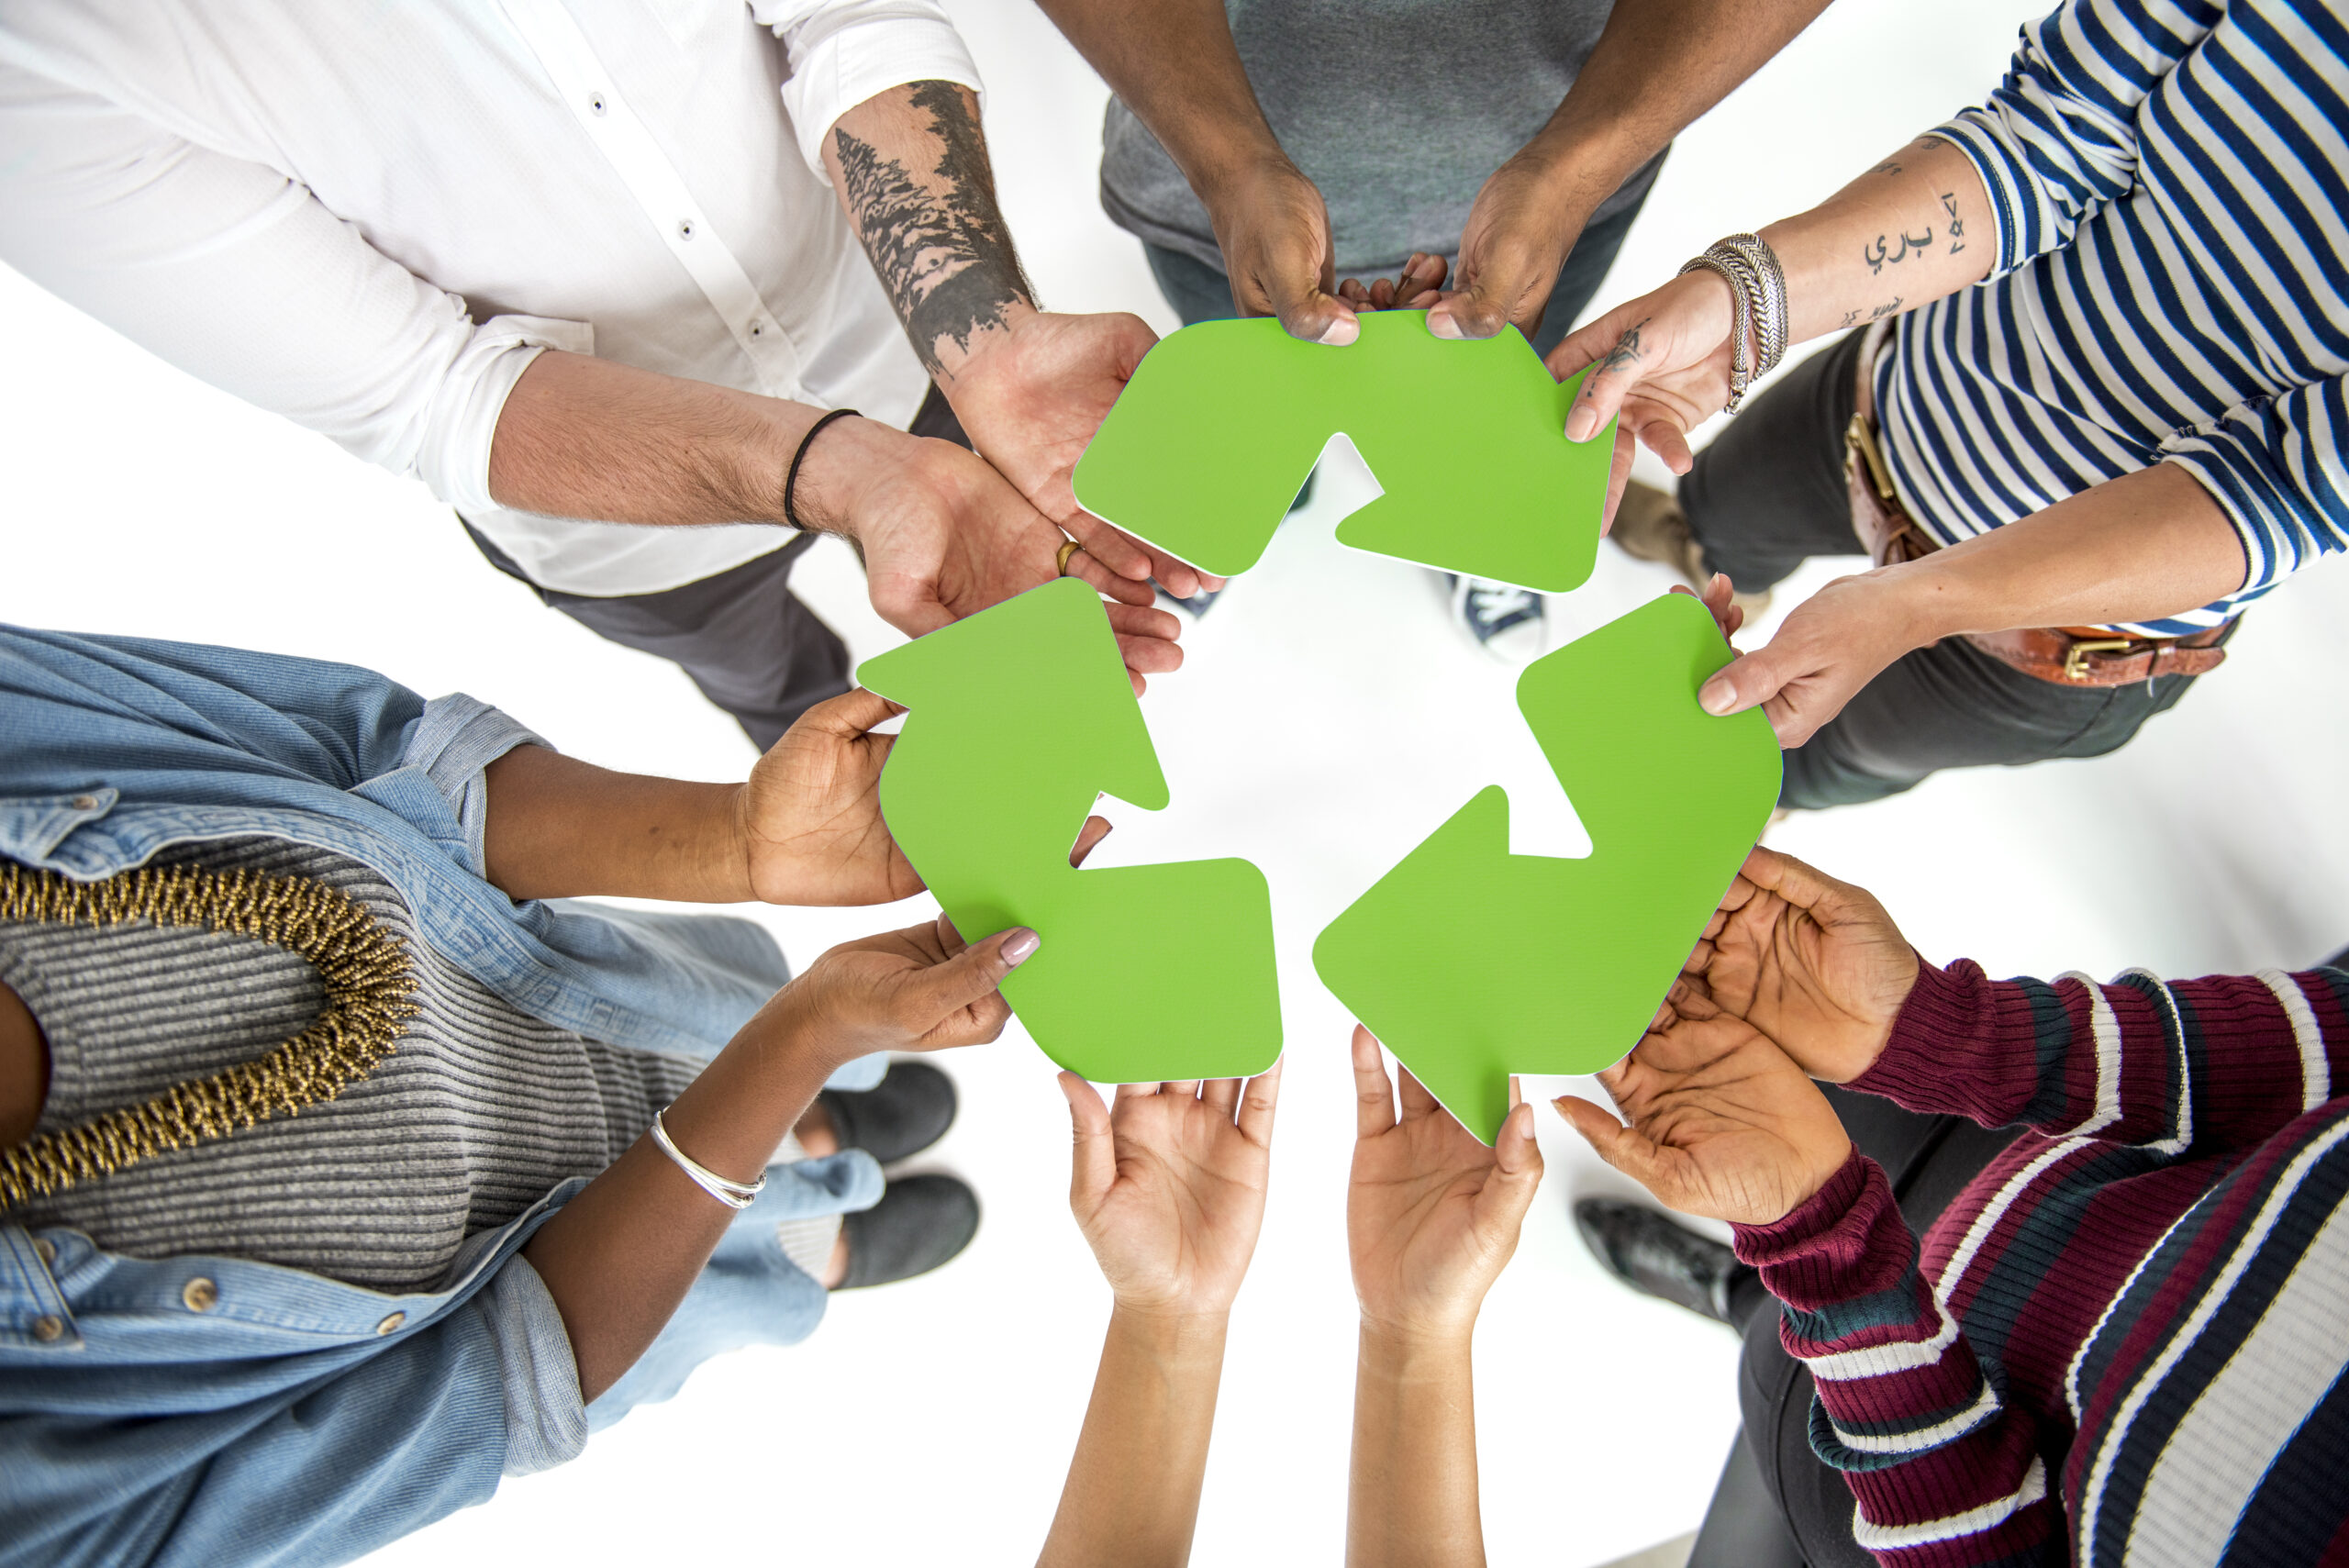 Zpracovatelé elektroodpadů založili asociaci. Chtějí podpořit ekologickou recyklaci spotřebičů.